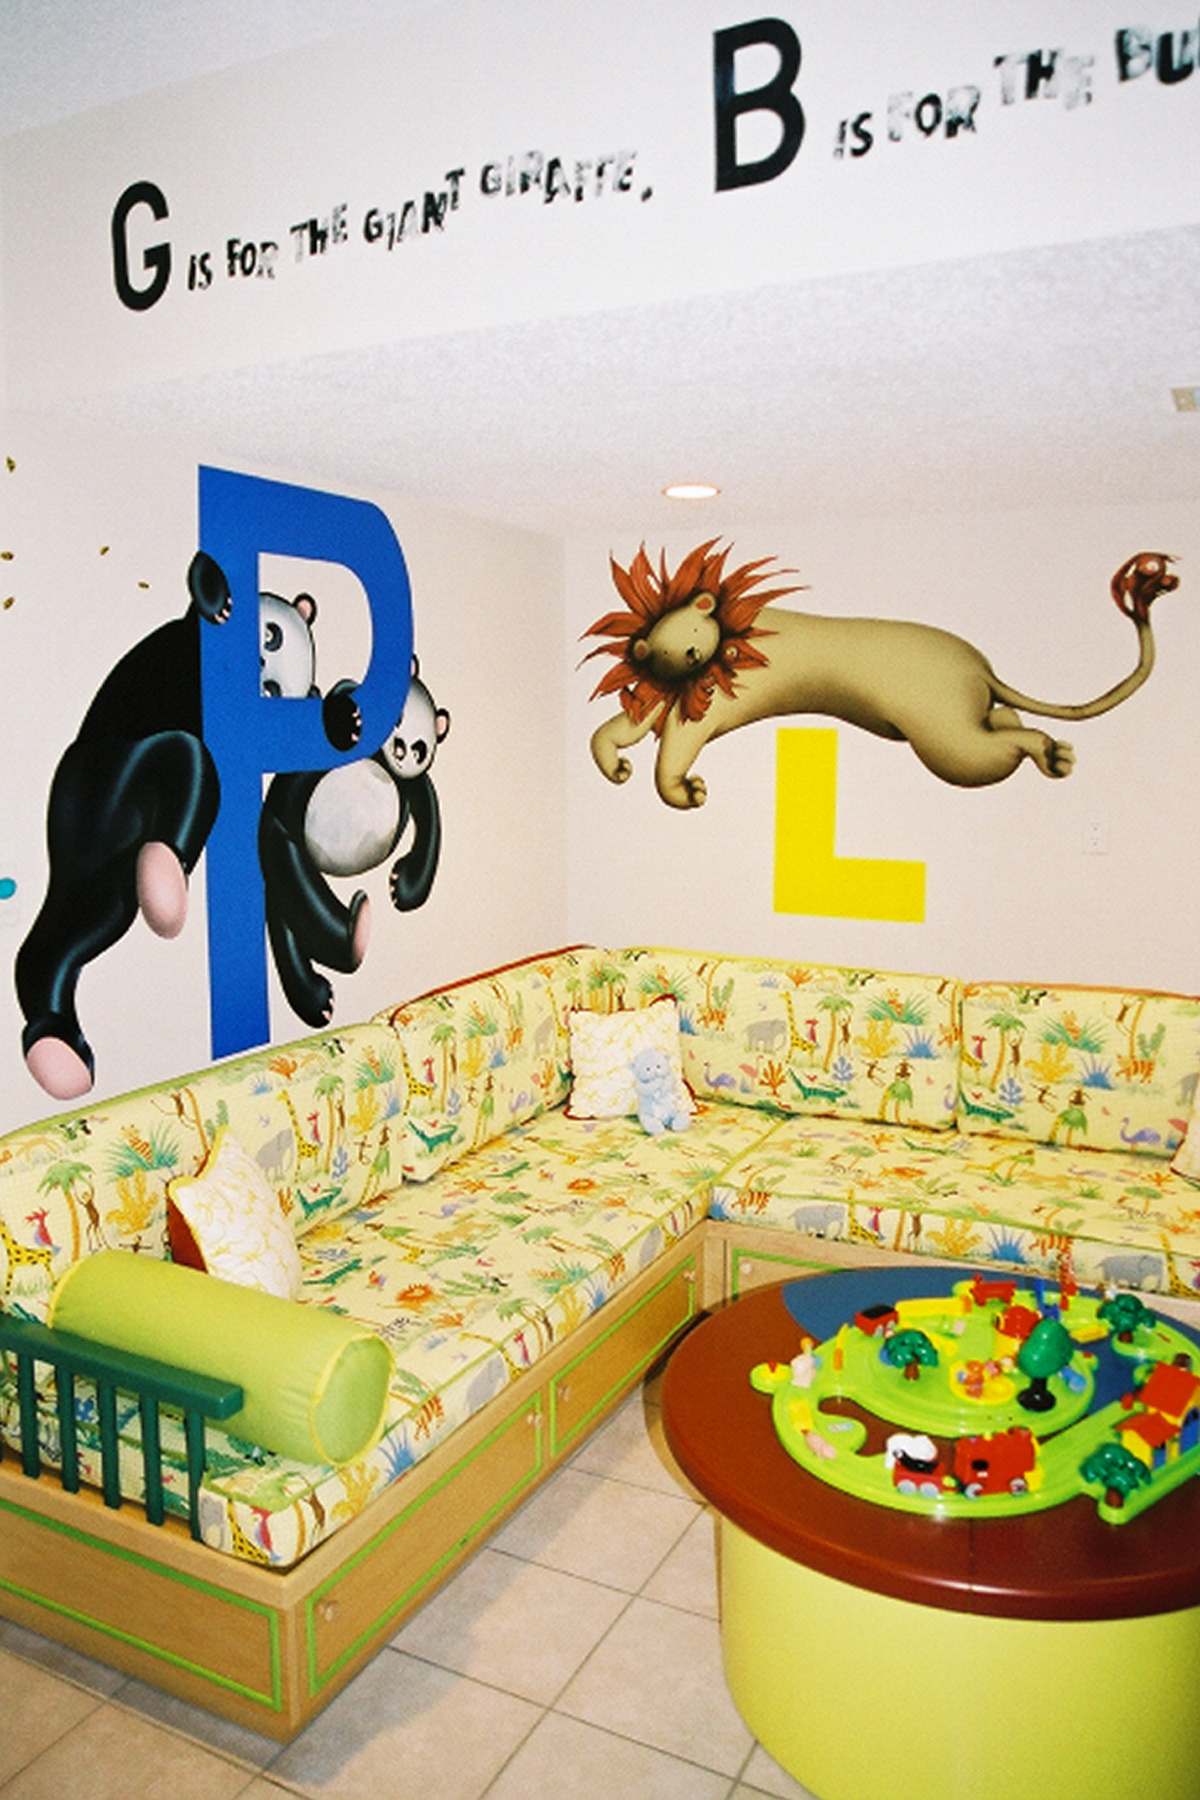 Murals children's murals Peter Rabbit daisy elephant playhouse noahs ark flower angel clouds ceiling car blimp trees lion